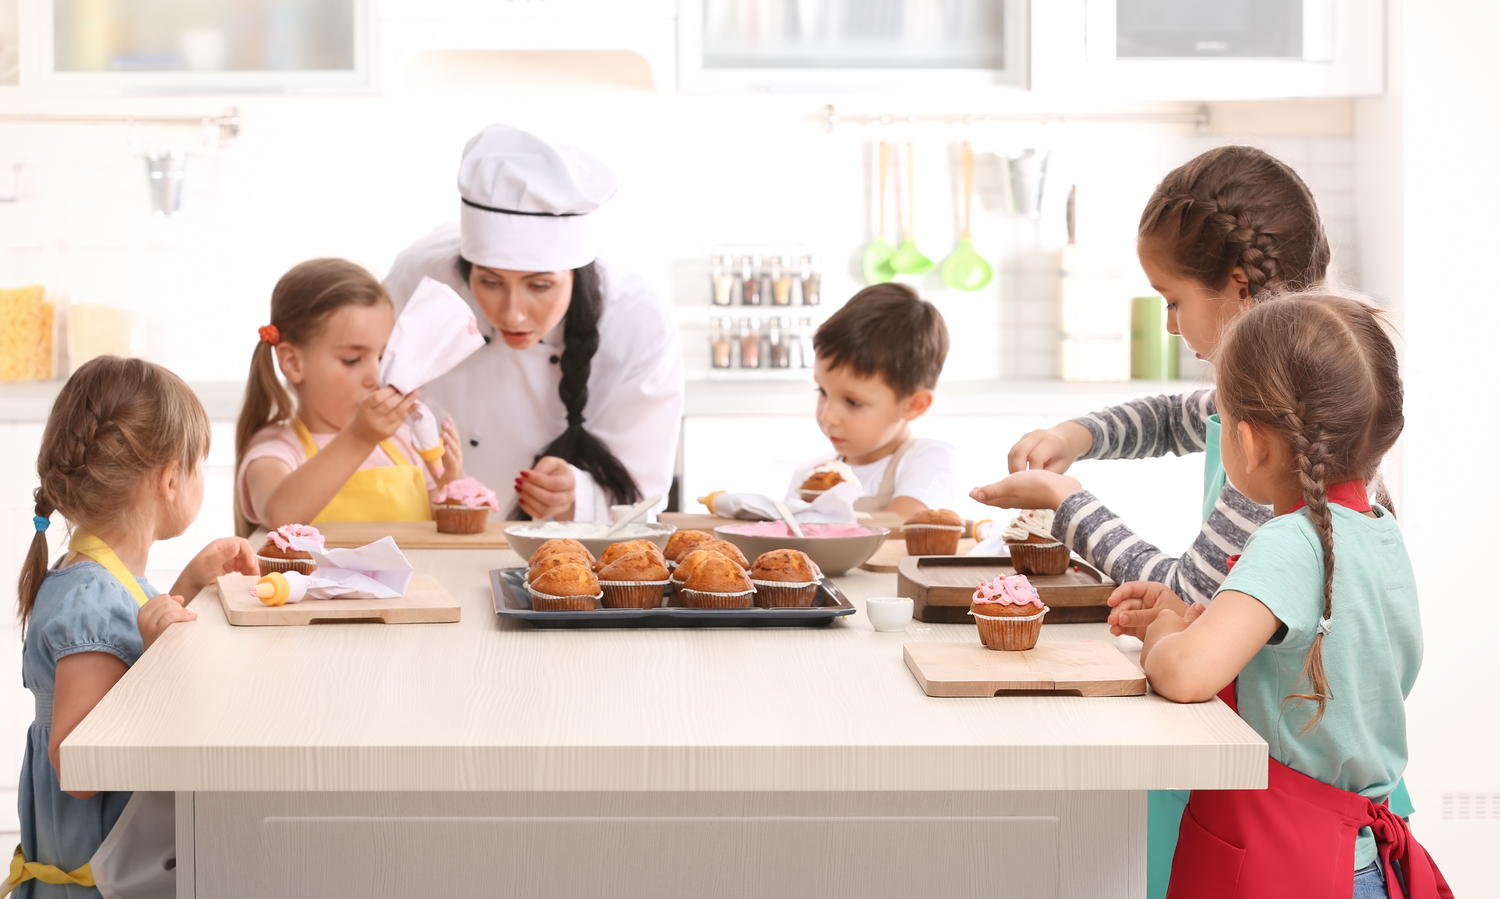 10 популярных кулинарных мастер-классов для детей в Москве